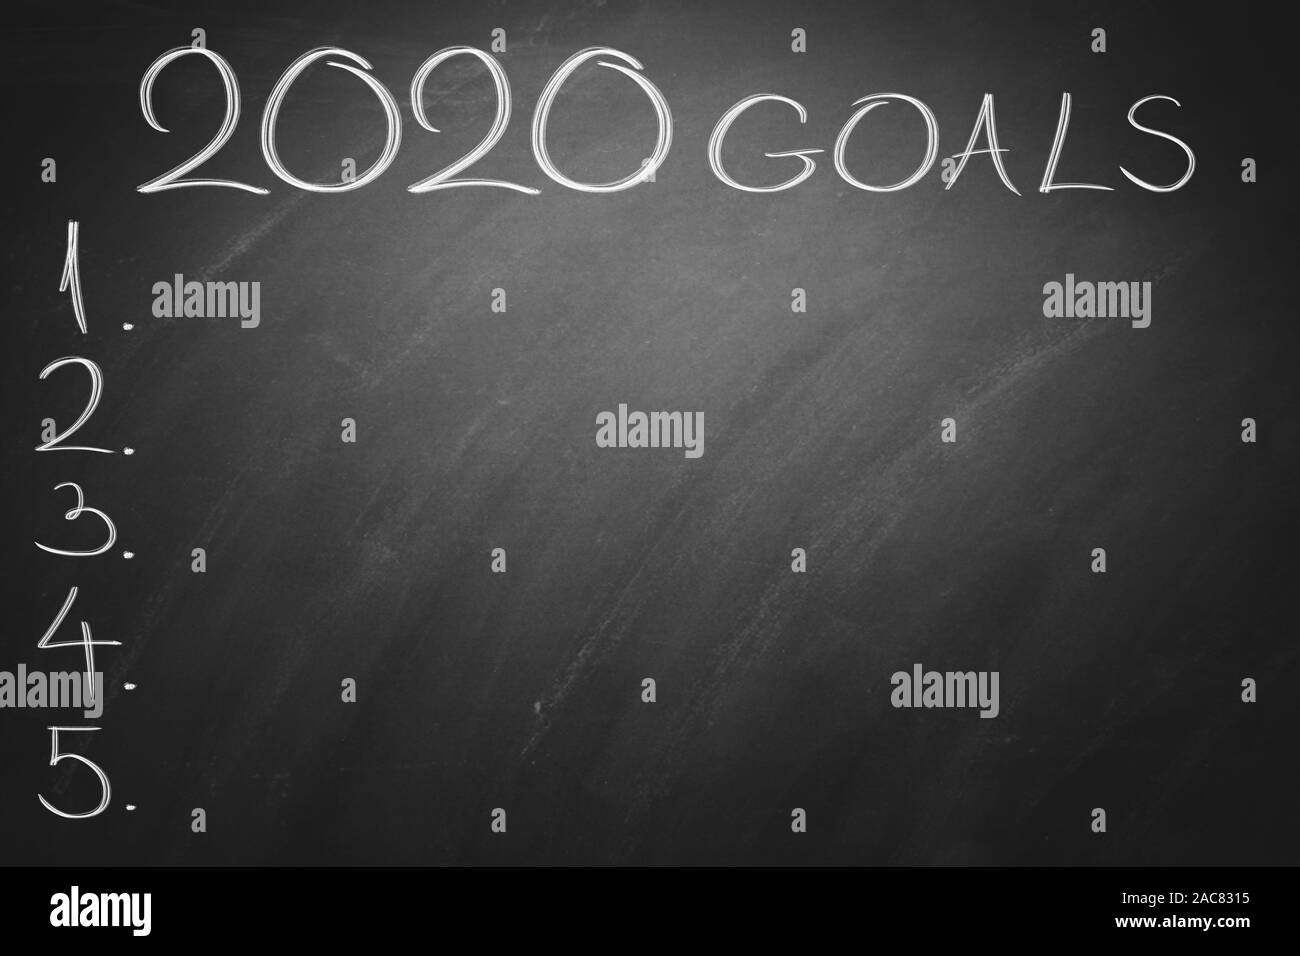 2020 Obiettivi sul bordo nero. Lavagna. Foto Stock